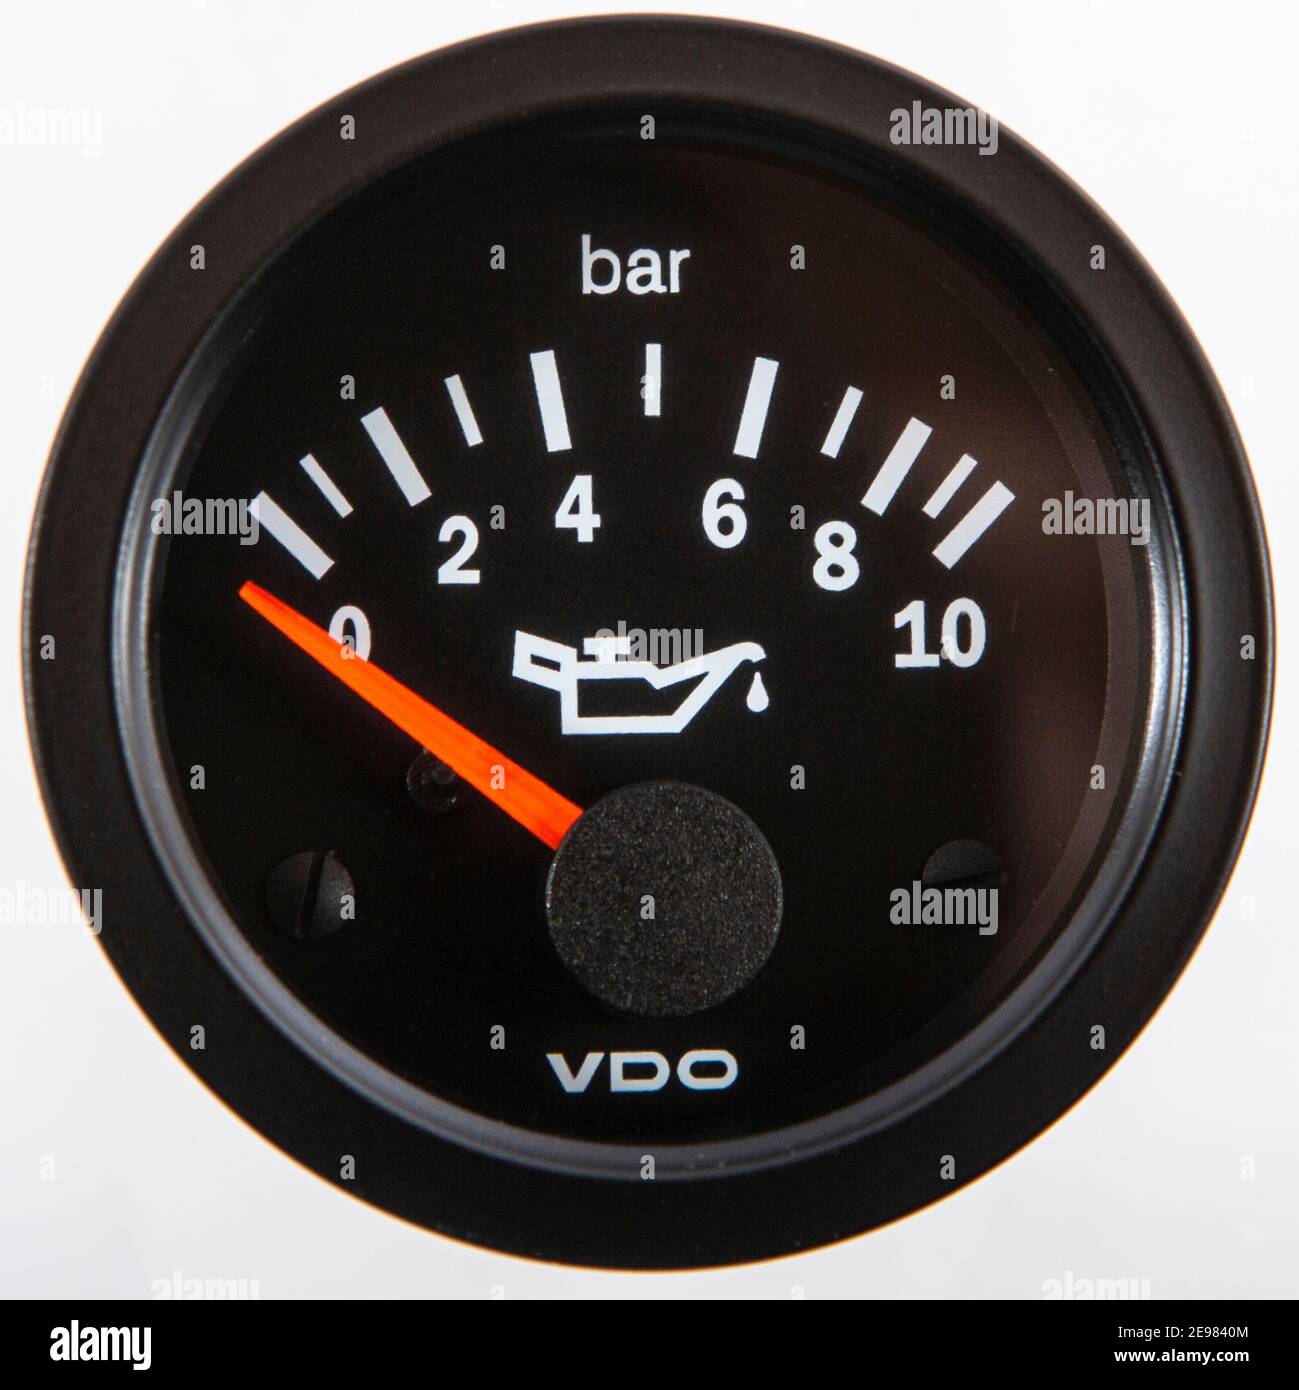 Eine Öldruckanzeige freigestellt von VDO. Beliebtes Zusatzinstrument für  Old- und Youngtimer Stock Photo - Alamy